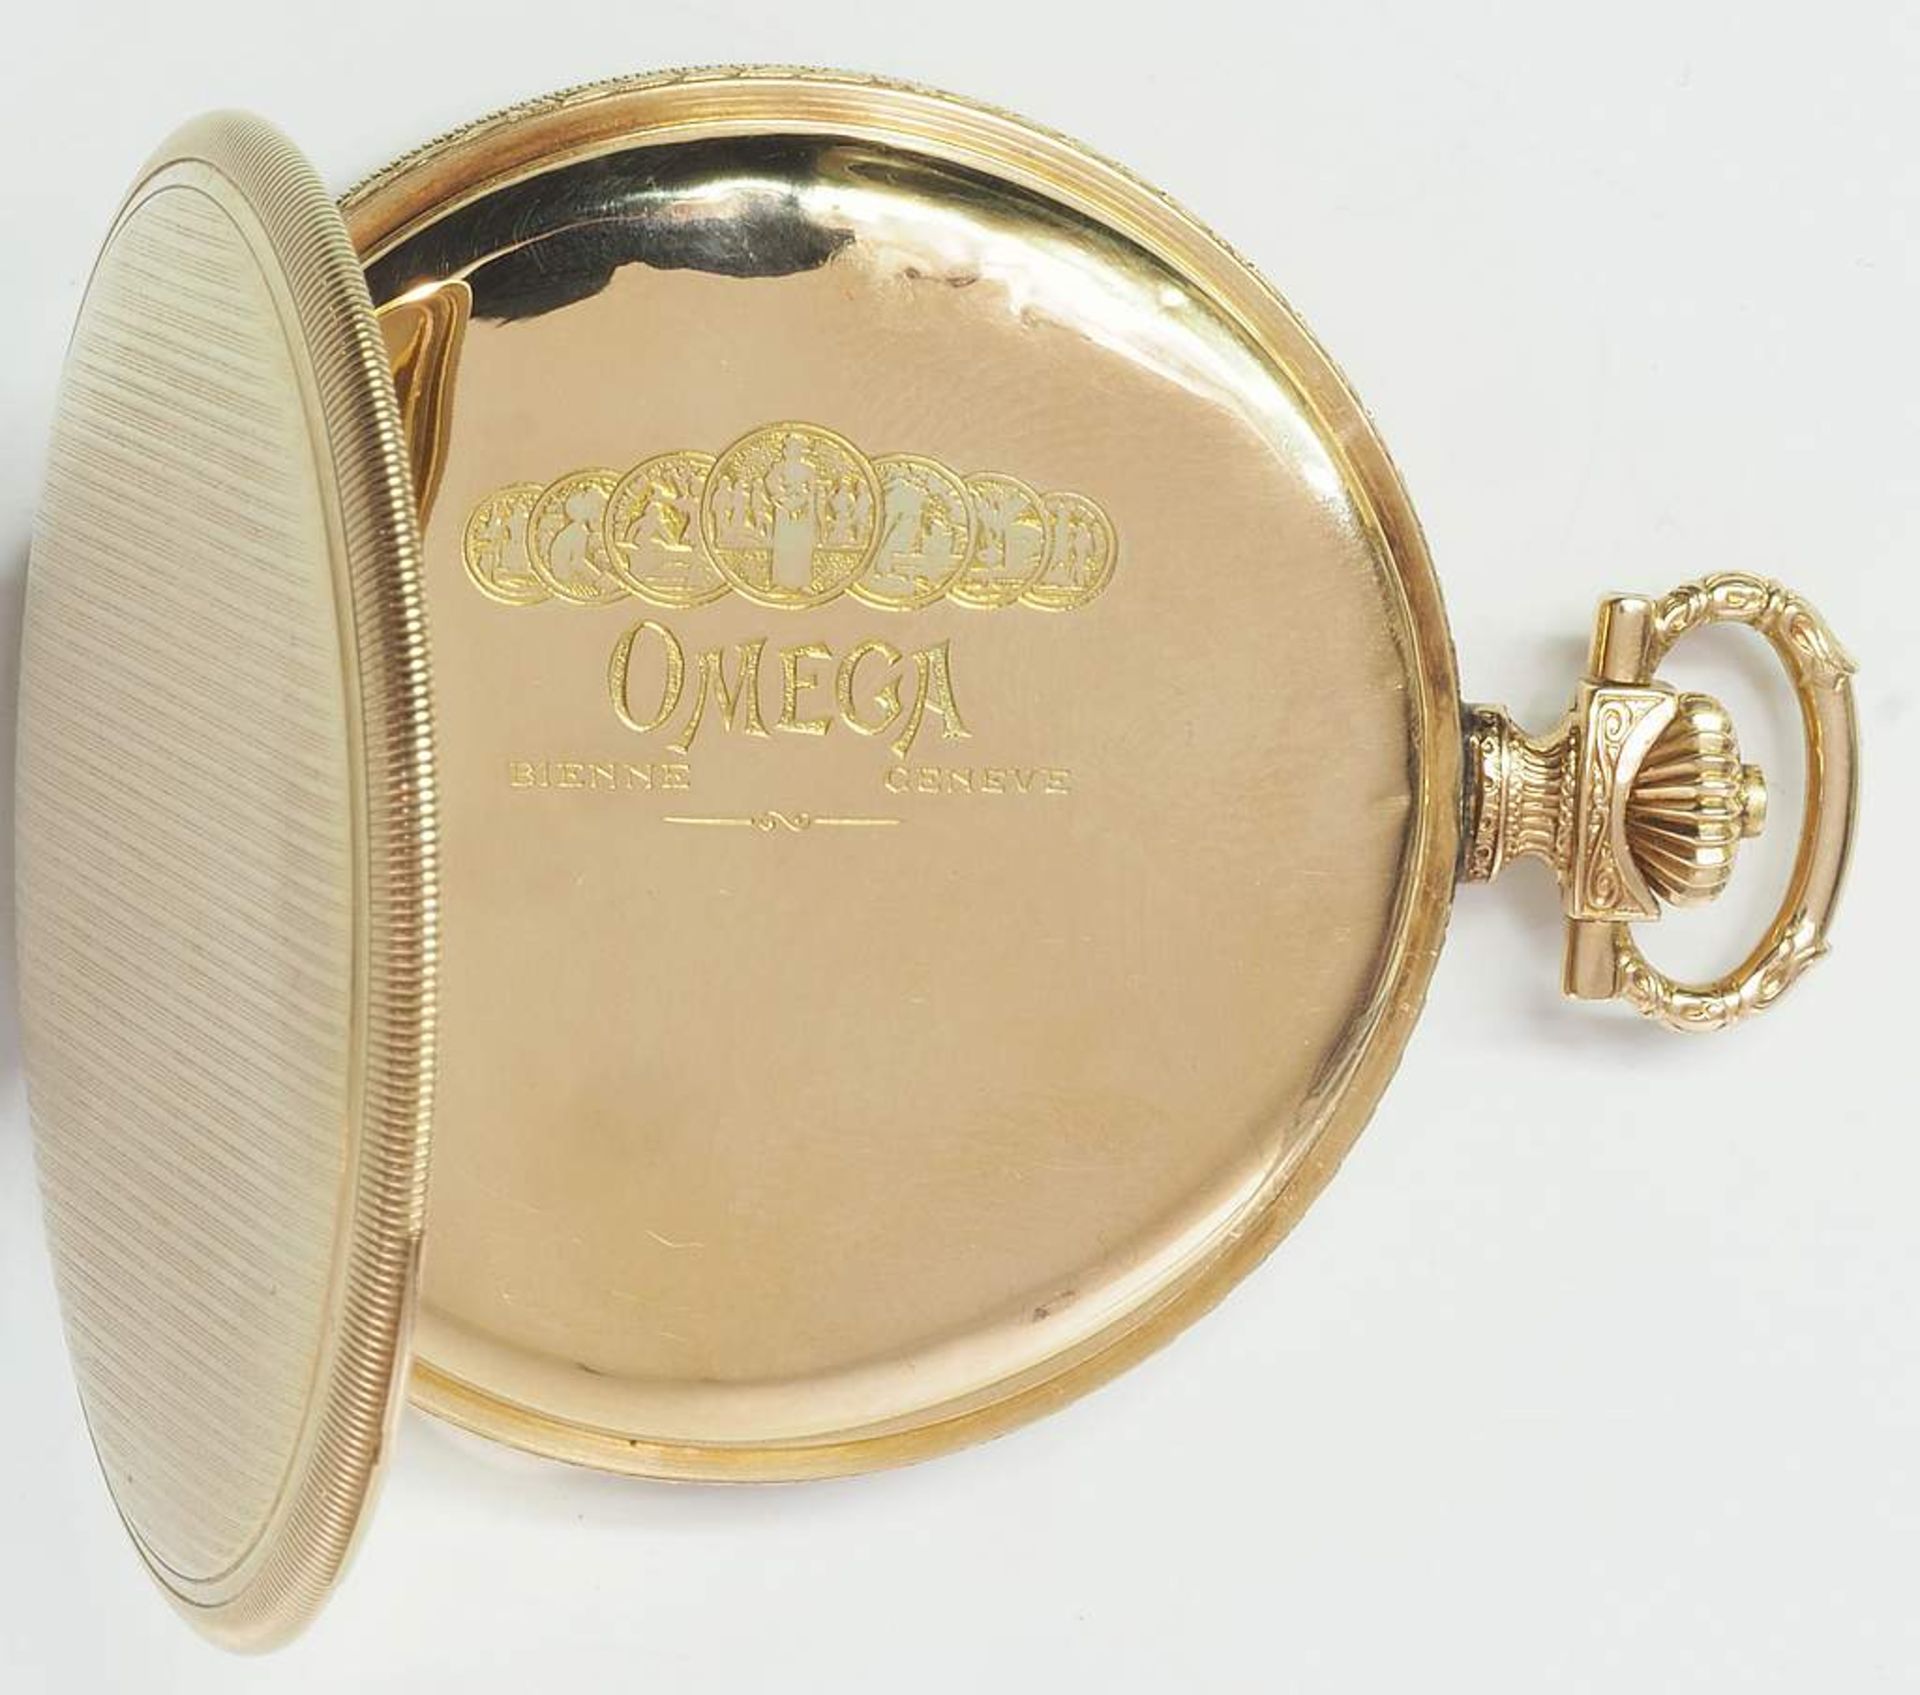 Savonette Taschenuhr "OMEGA", 585er Geld, alle Deckel Gold. Ca. 30iger Jahre, goldfarbenes - Bild 6 aus 9